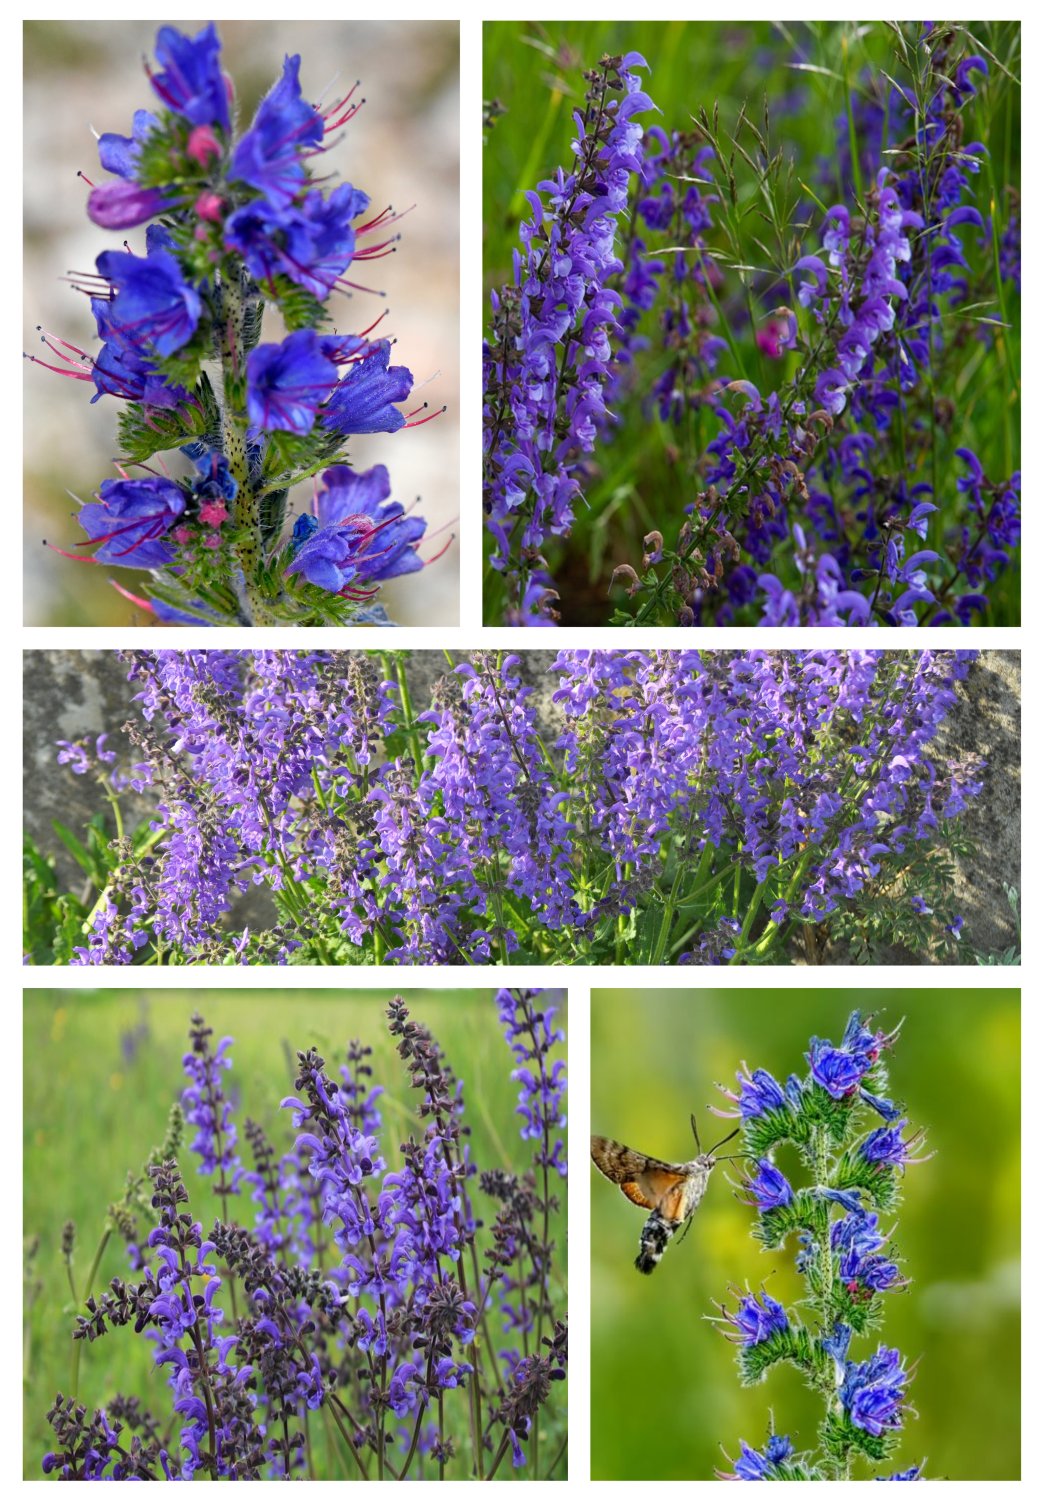 Blumensamenmischung "Blaublüter" Bienenparadies in Blau